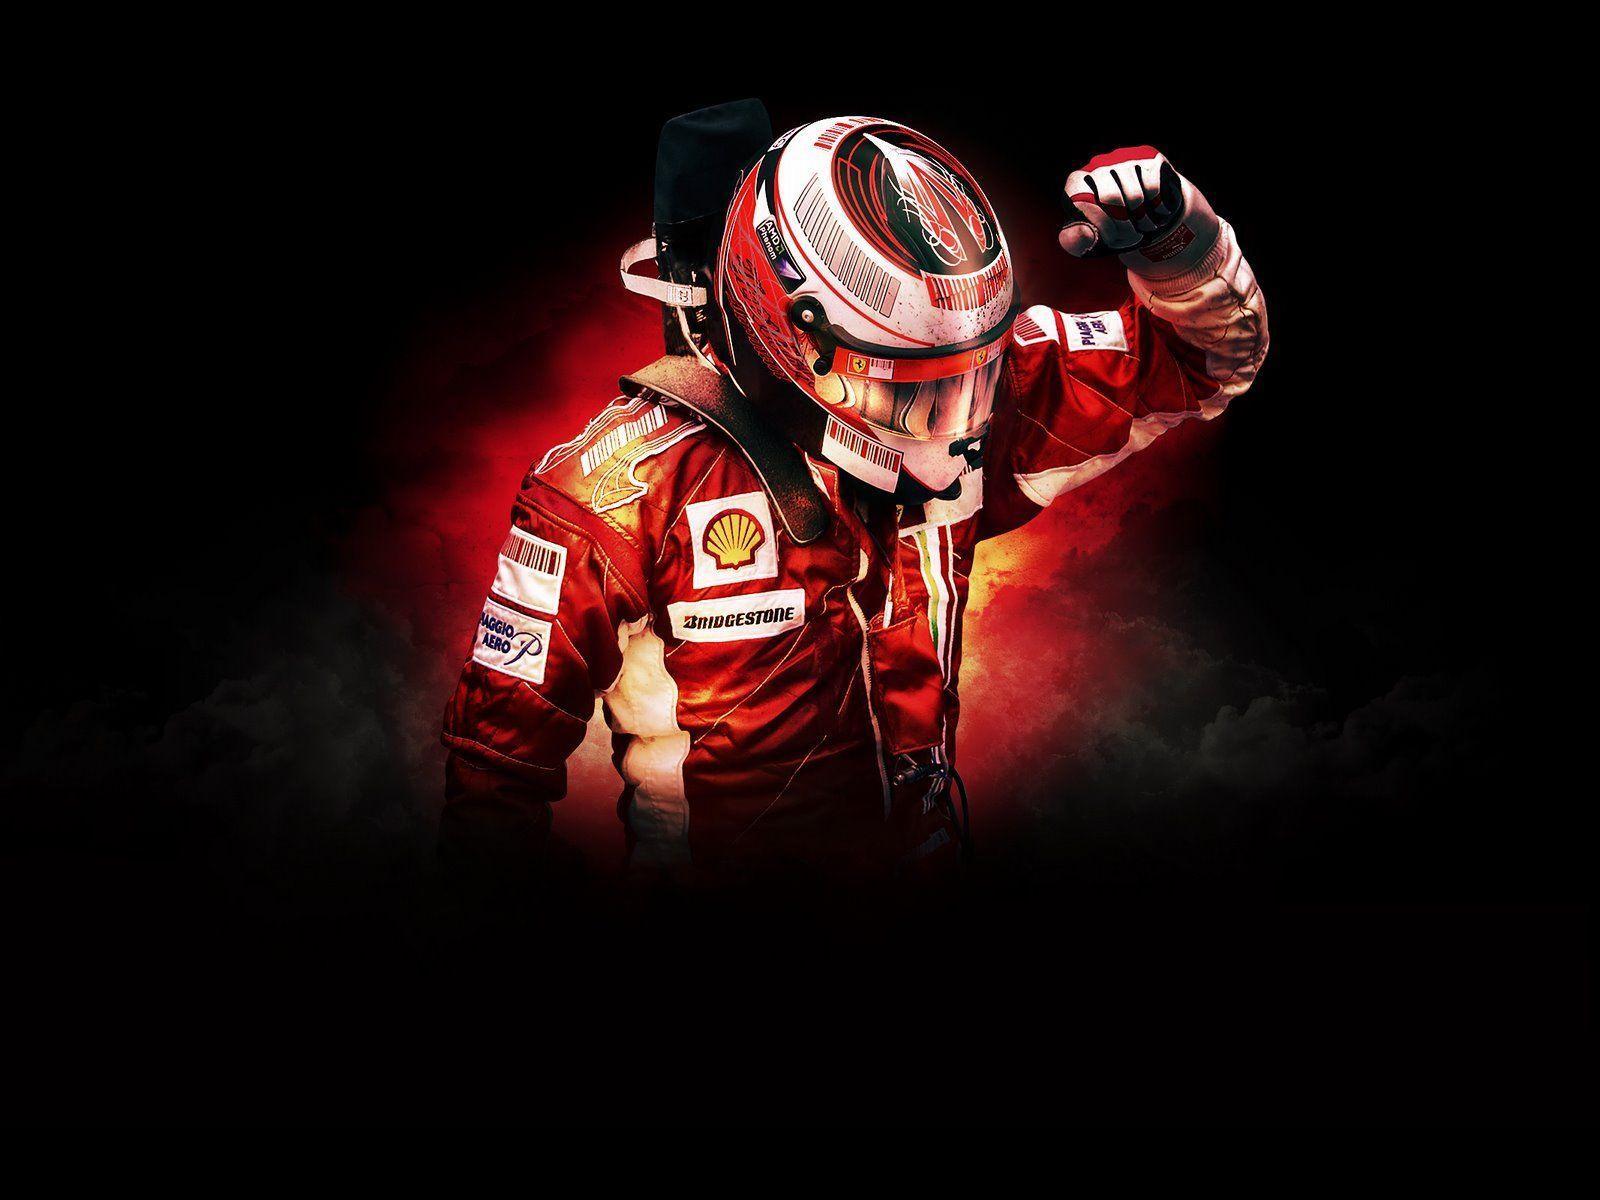  Kimi Räikkönen Hintergrundbild 1600x1200. Kimi Raikkonen Wallpaper Free Kimi Raikkonen Background